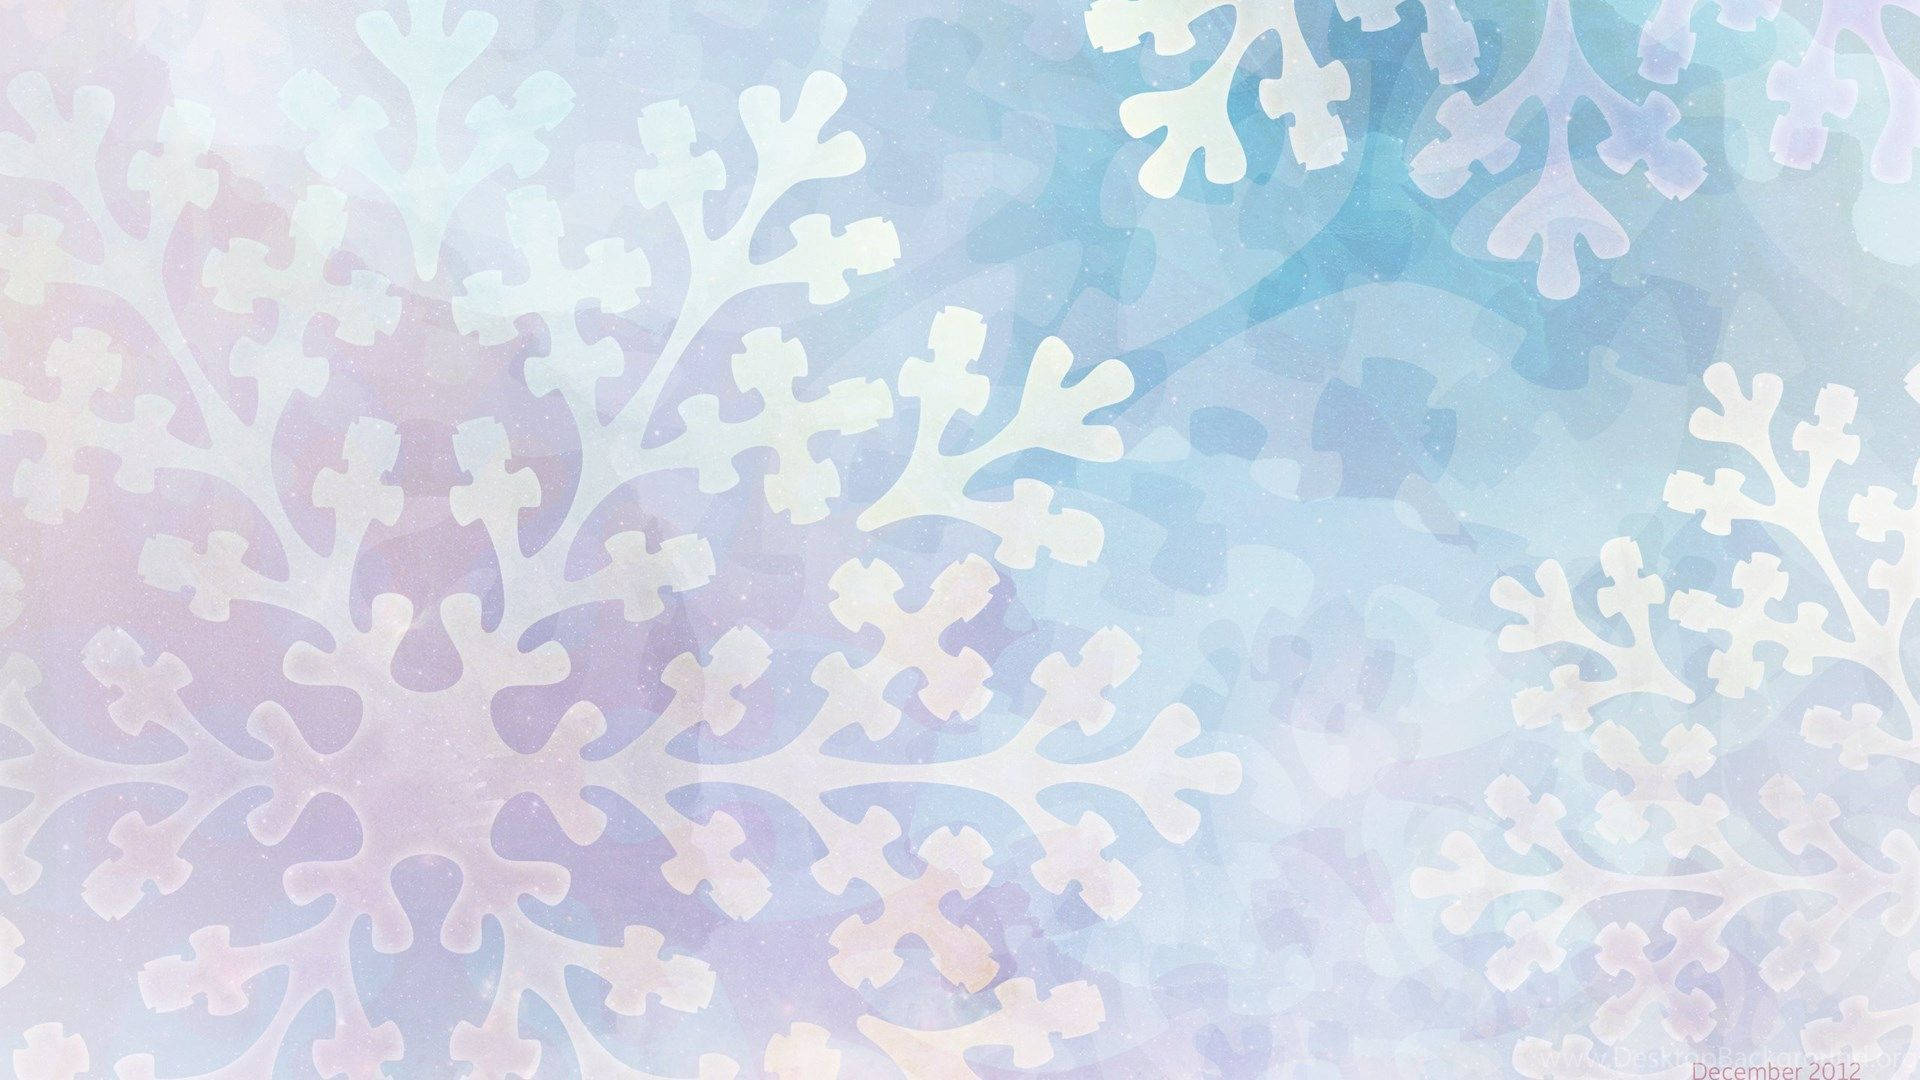 Download Aesthetic December Snowflake Wallpaper